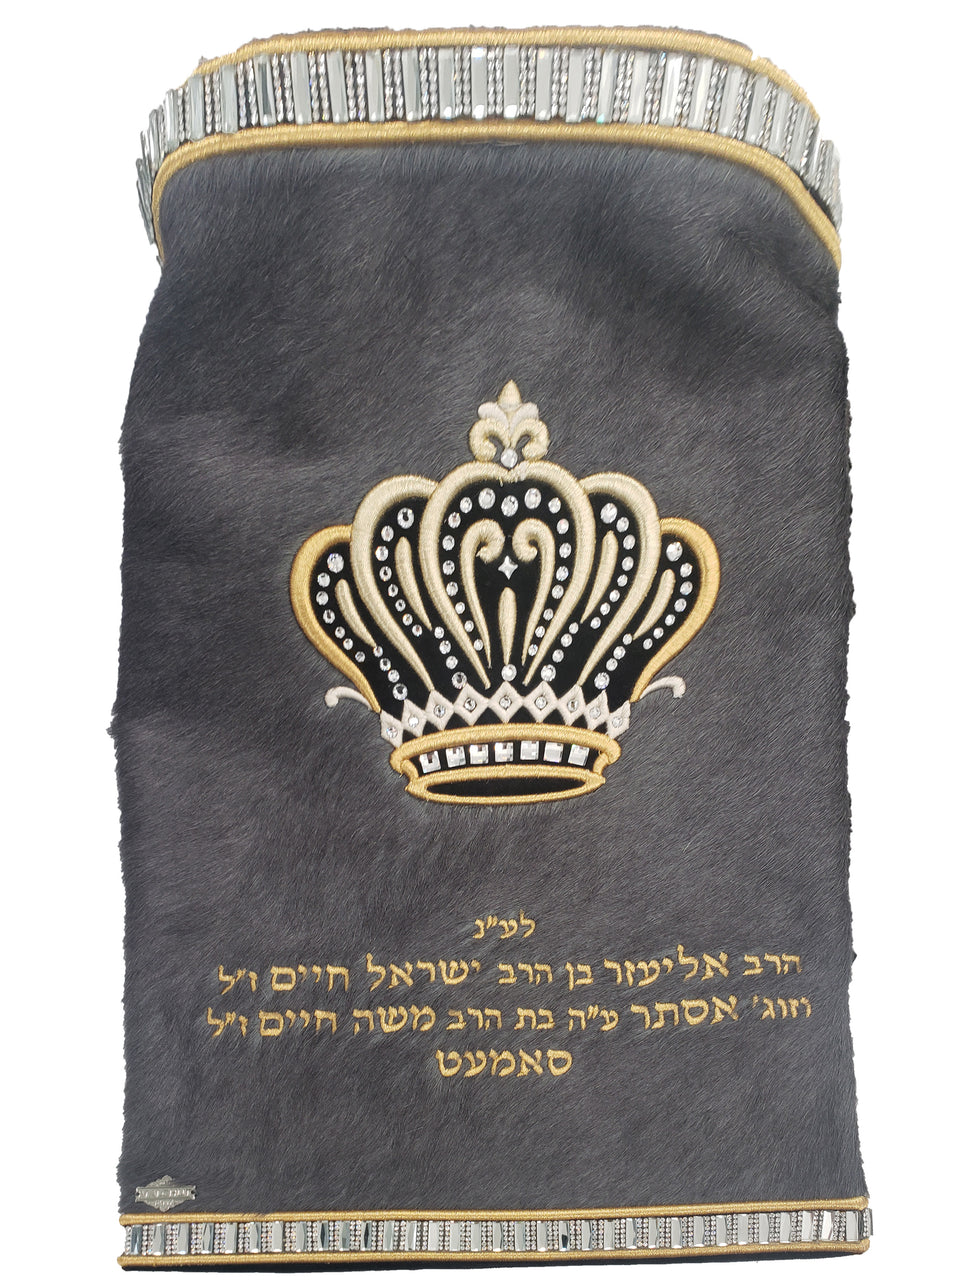 Sefer Torah Mantel #15-1